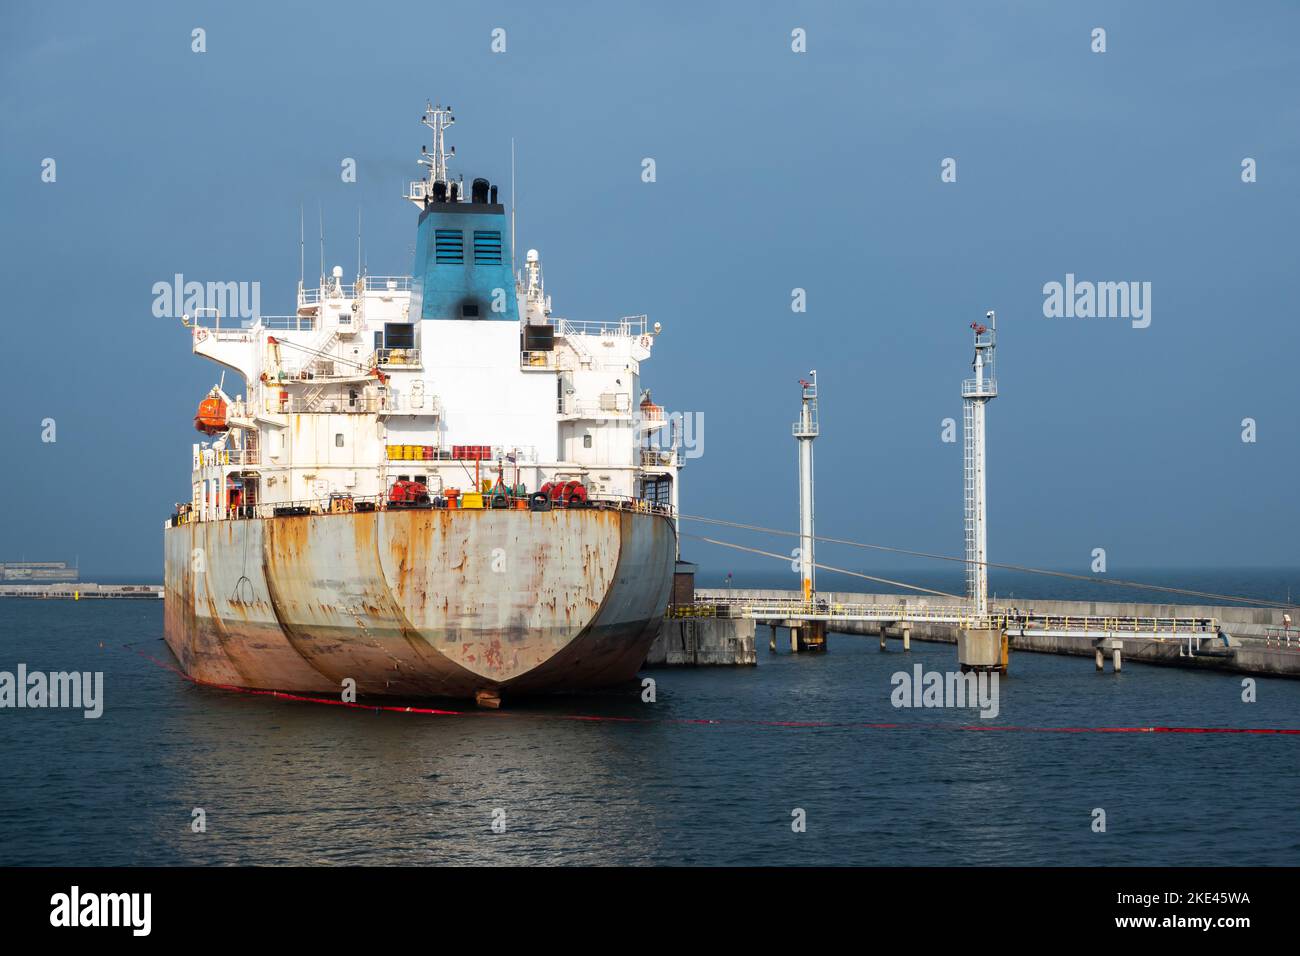 Un pétrolier amarré dans le port pour la durée de l'opération de déchargement de pétrole brut. Photo prise dans des conditions d'éclairage naturel. Banque D'Images